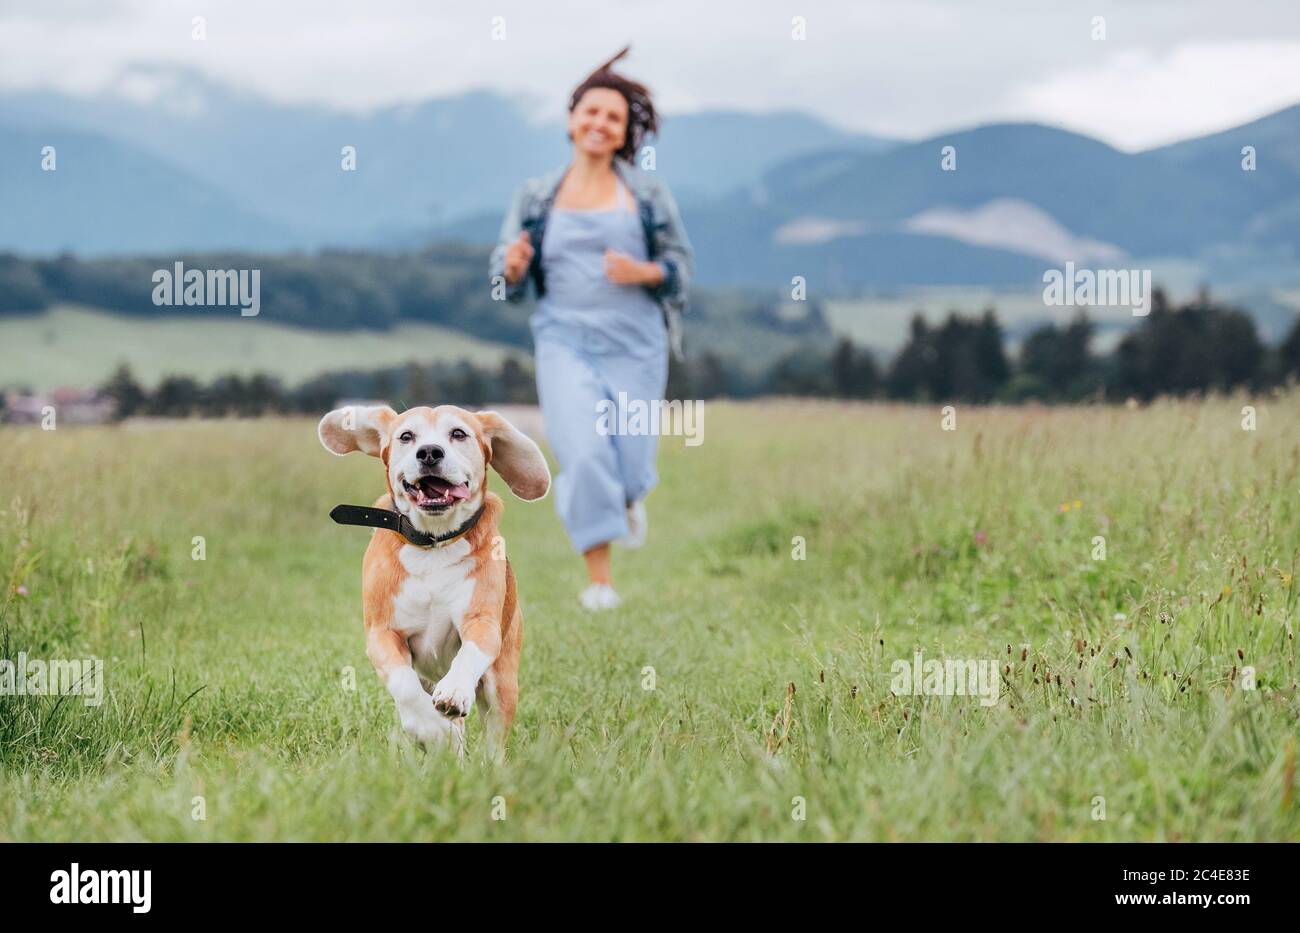 Portrait de chien de beagle souriant avec langue sortie et le propriétaire femelle jogging par le chemin de montage de l'herbe de prairie. Marcher dans la nature avec les animaux de compagnie, hap Banque D'Images